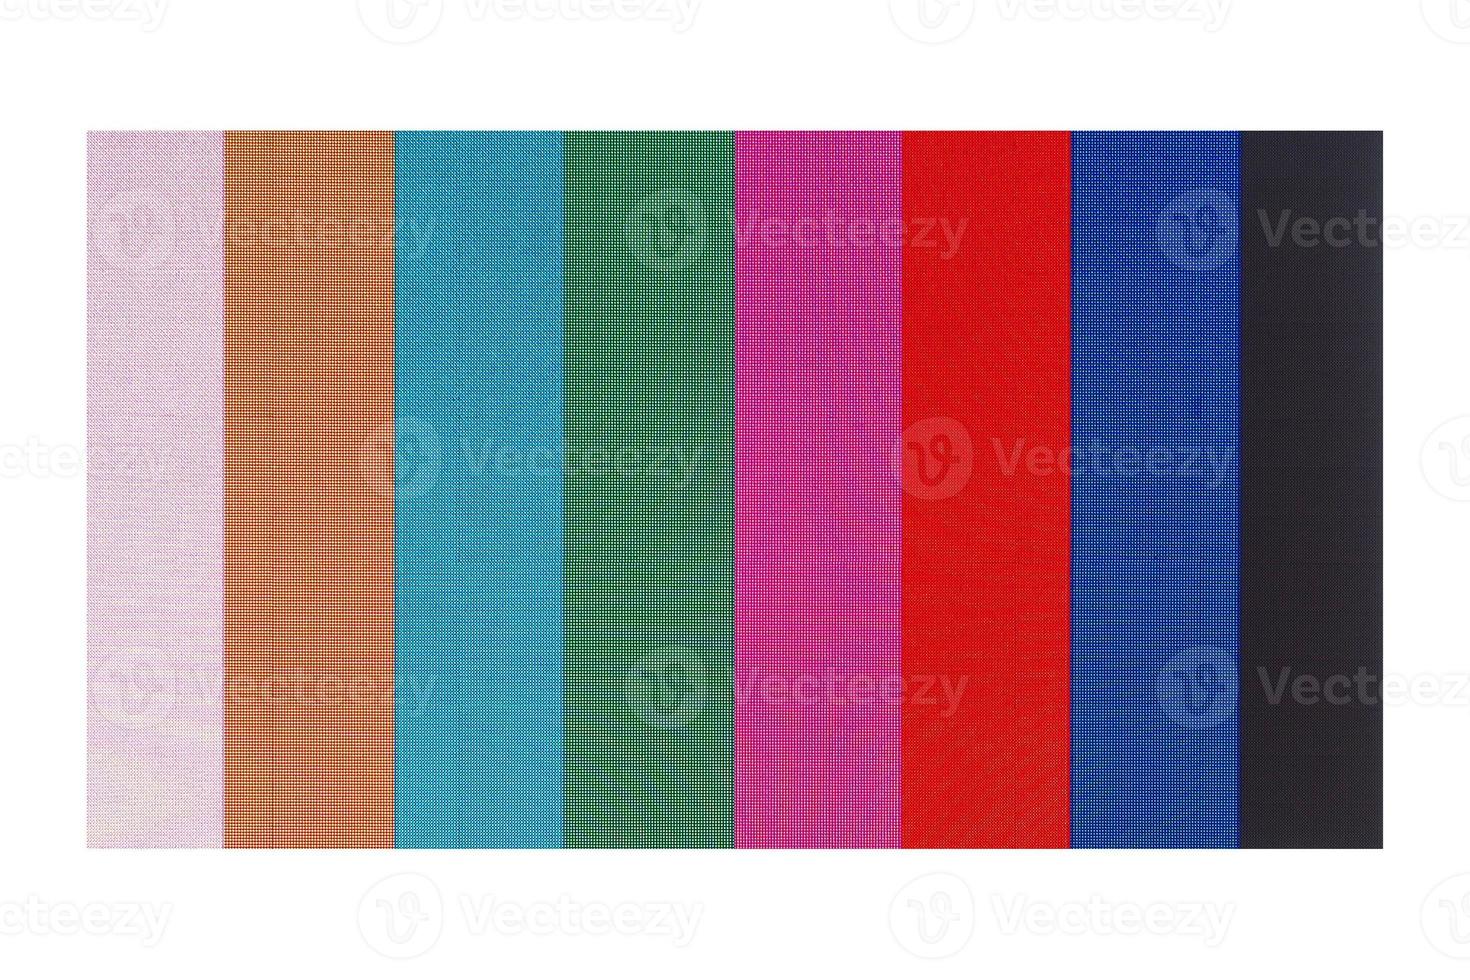 barras de teste de cores na tela foto